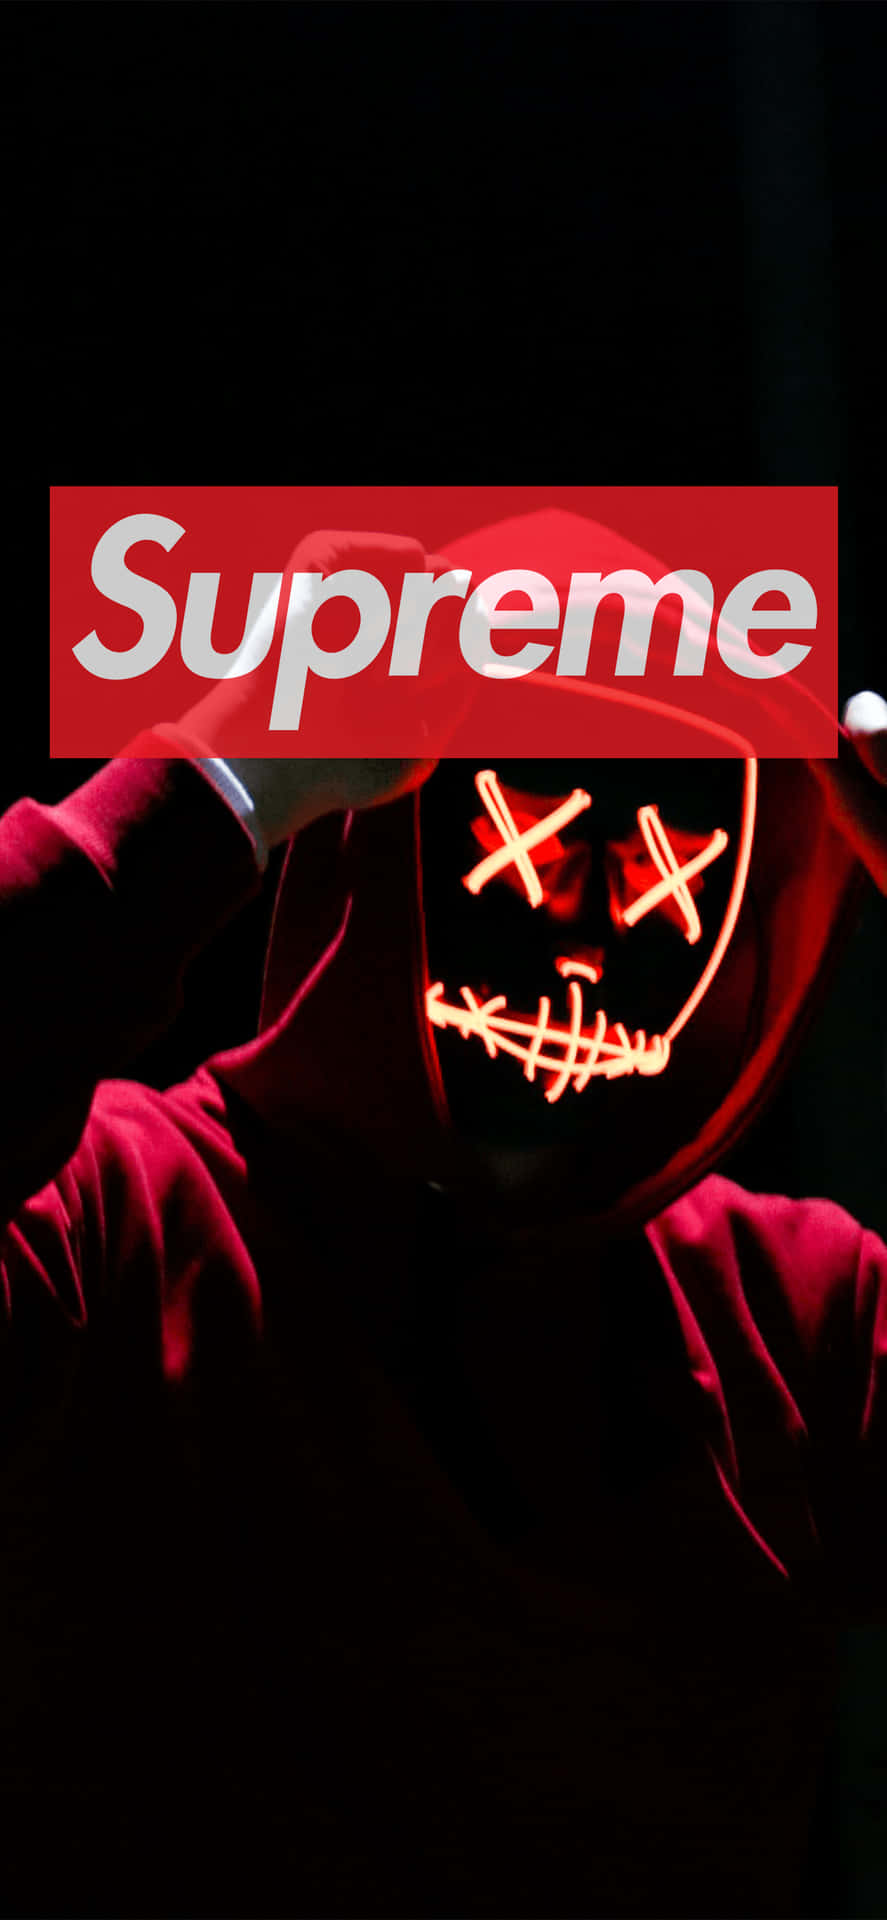 Supreme Logo i rødt og hvidt Wallpaper